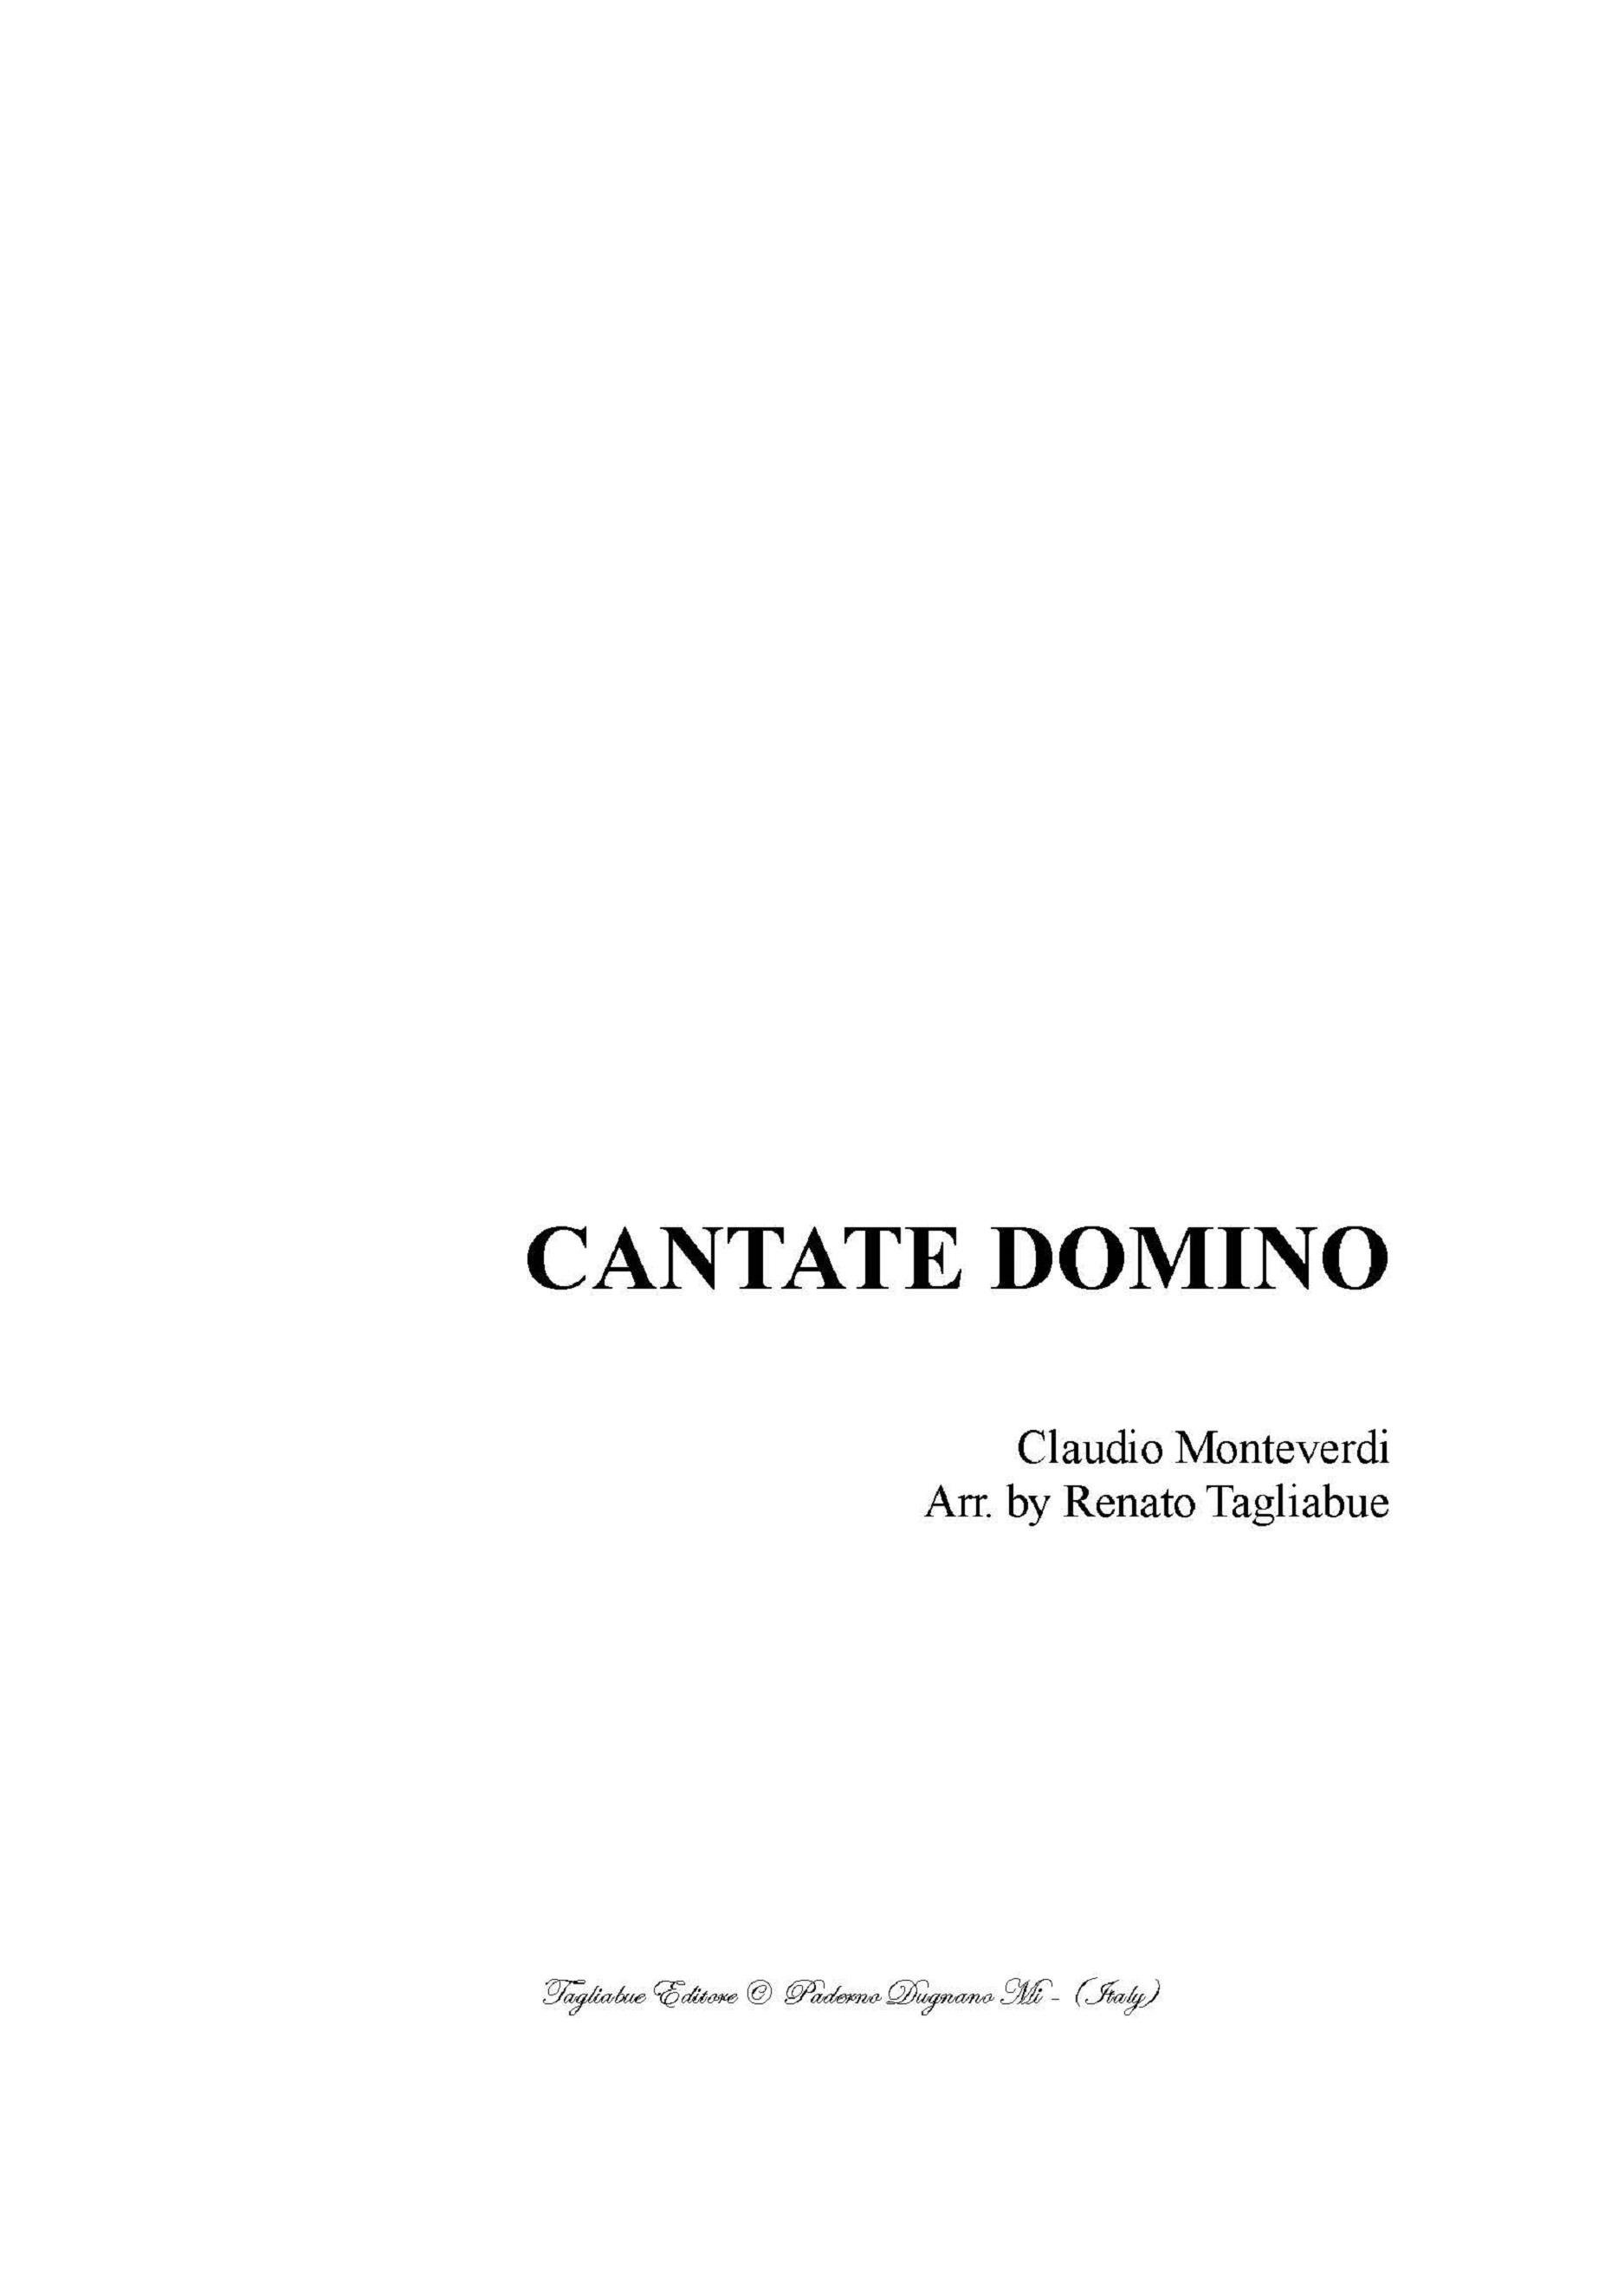 CANTATE DOMINO - Claudio Monteverdi - For SSATTB Choir